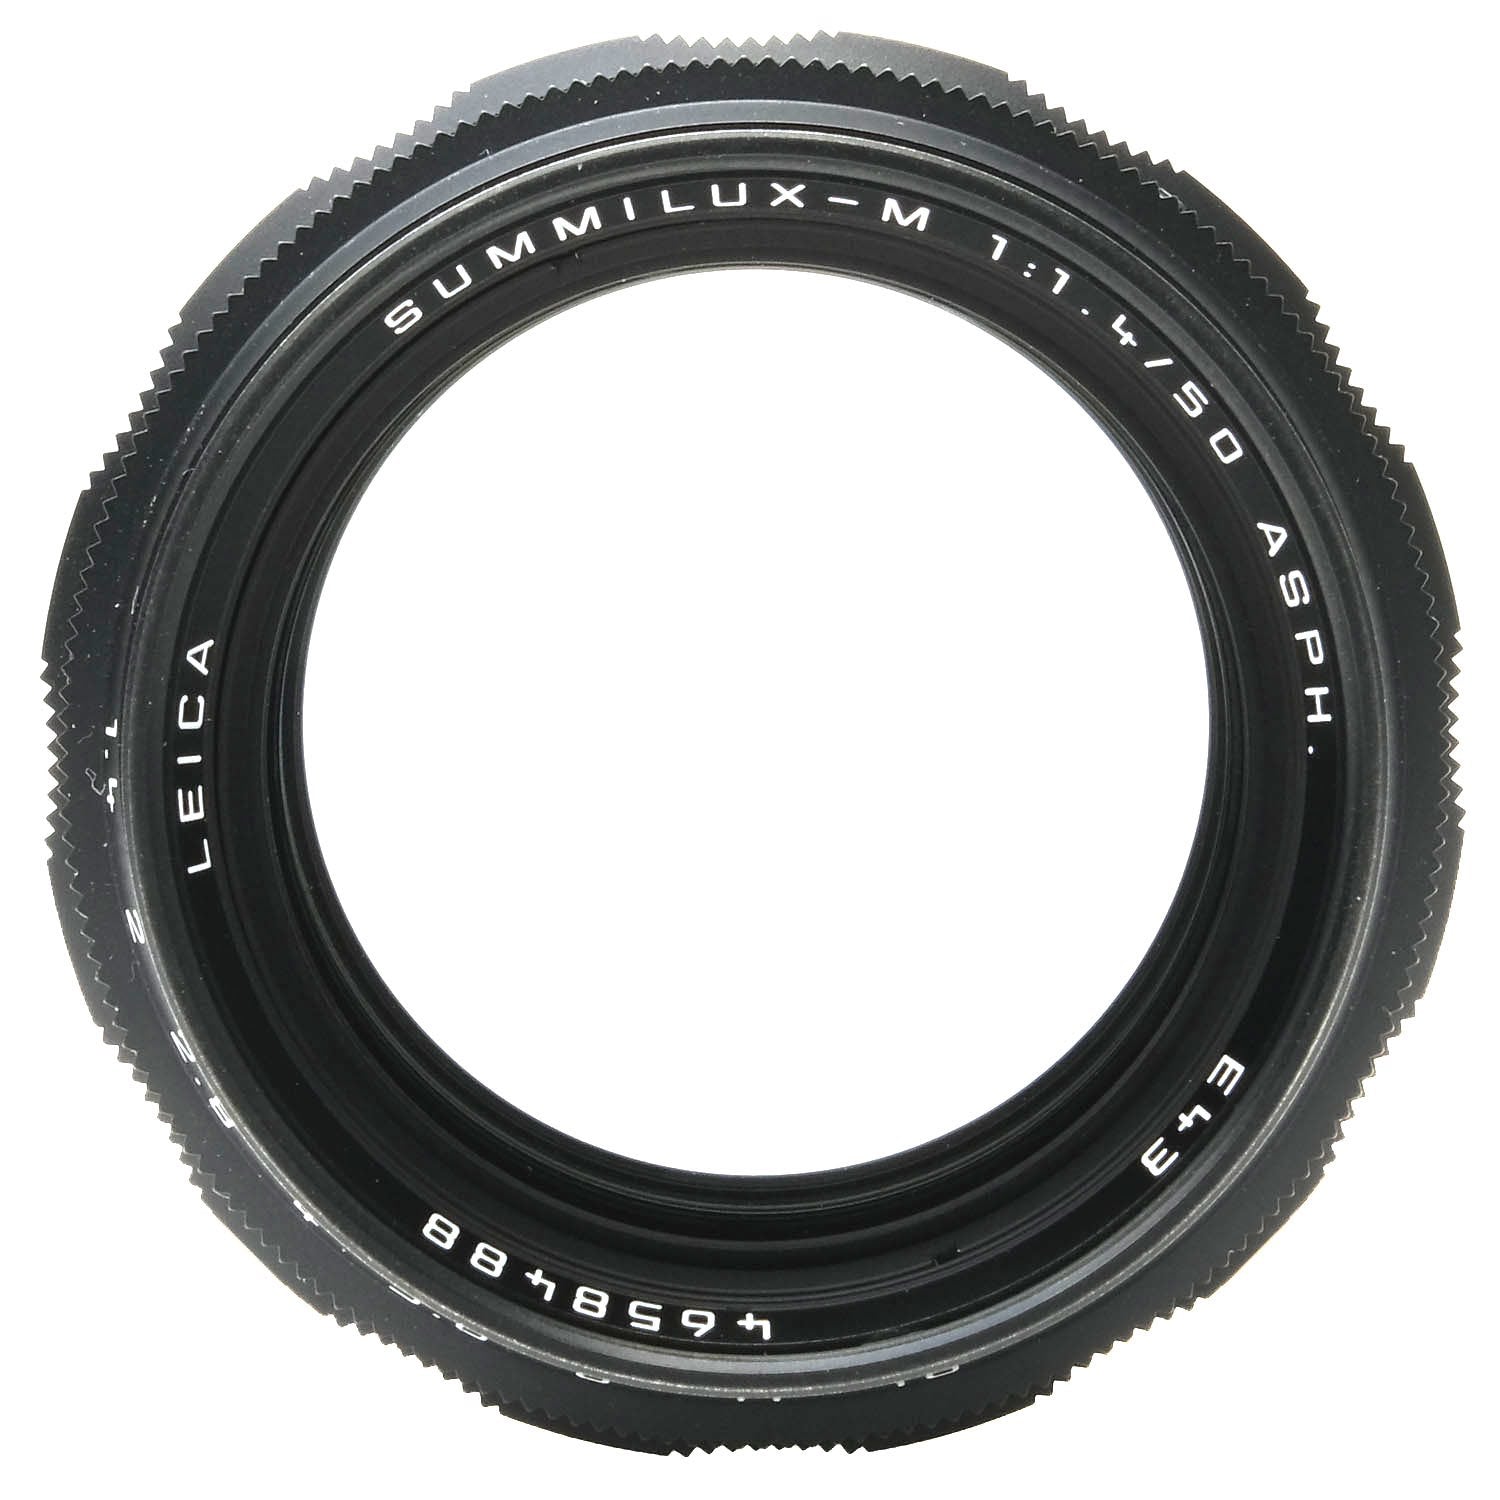 Leica 50mm f1.4 Summilux Asph, Black Chrome, Boxed 4658488